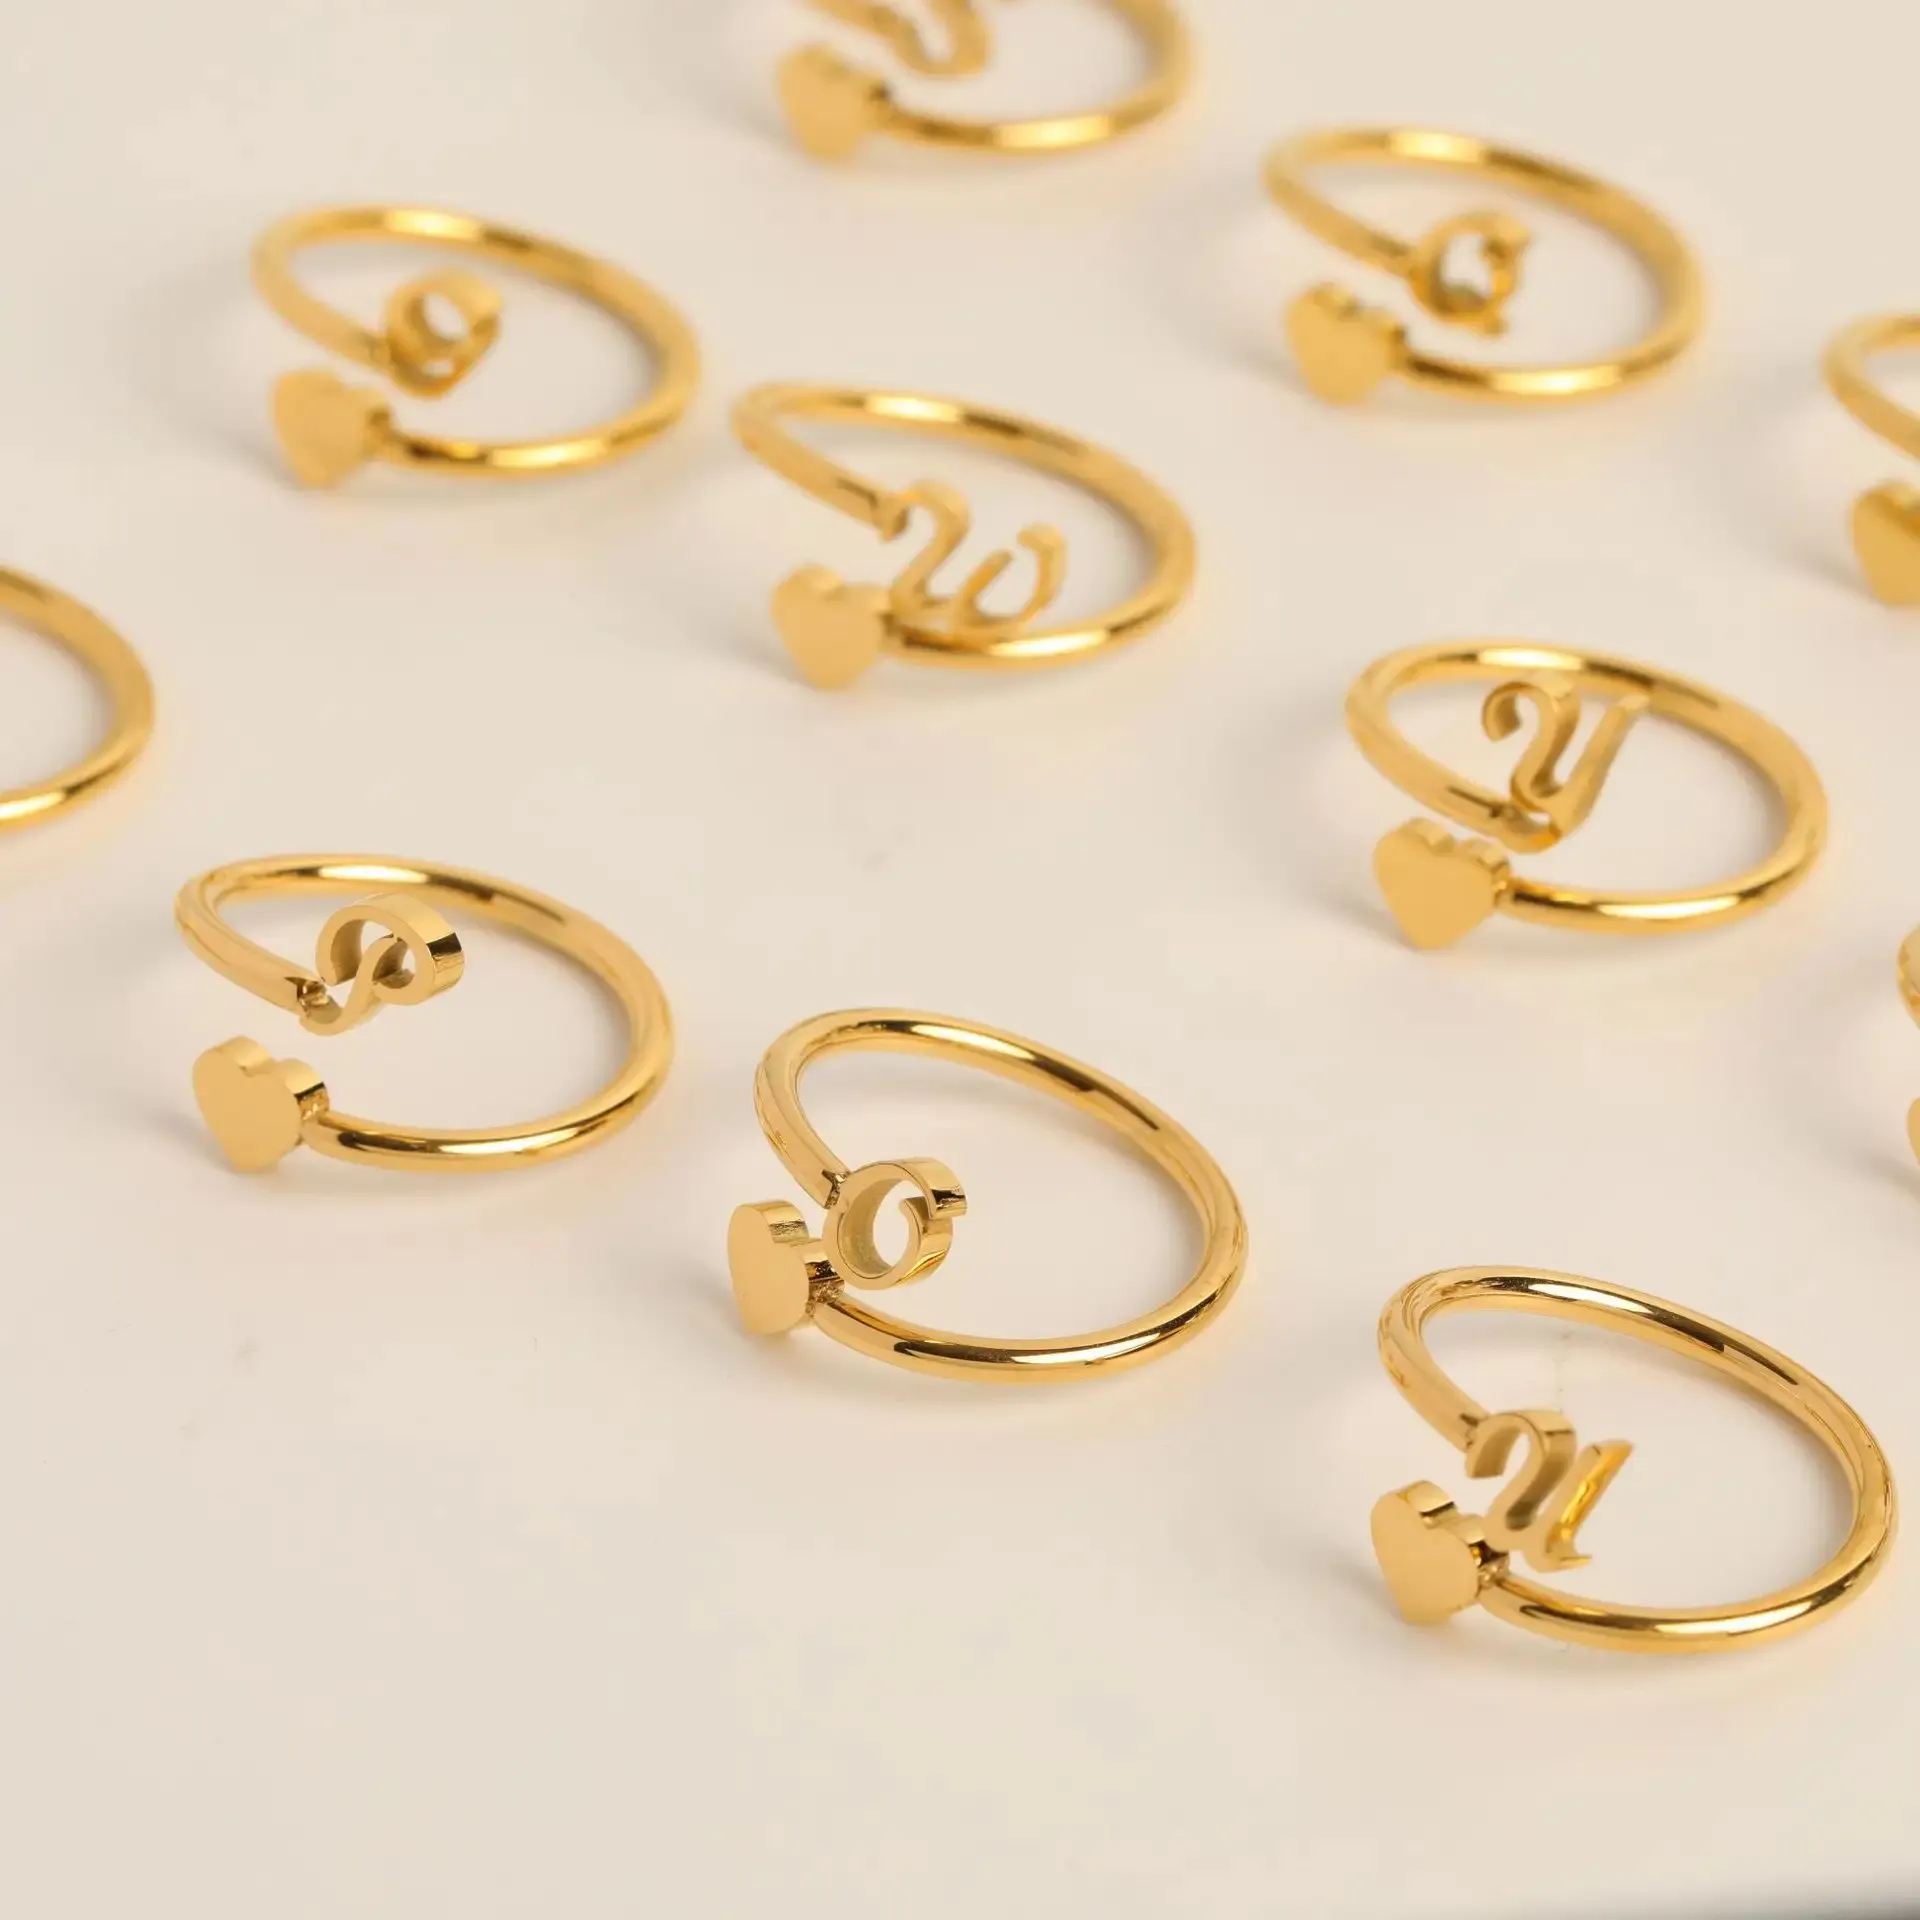 Custom Jewelry Adjustable 18k Gold Stainless Steel Heart Letter Finger Rings Women Alphabet Minimalist Non Tarnish Open Rings